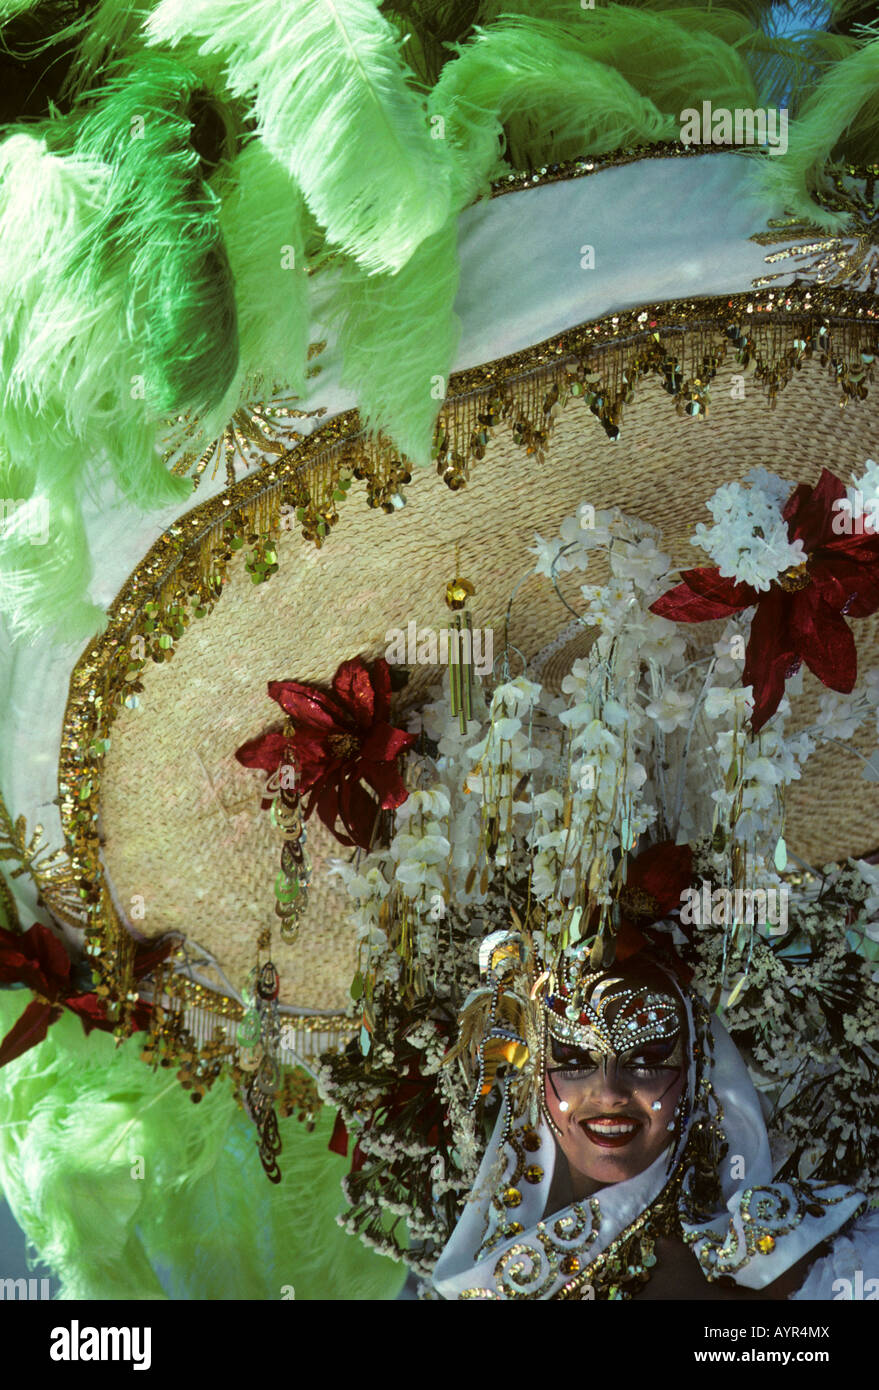 Reine portant une coiffe ornée pendant le Carnaval de Santa Cruz de Tenerife, Îles Canaries, Espagne Banque D'Images